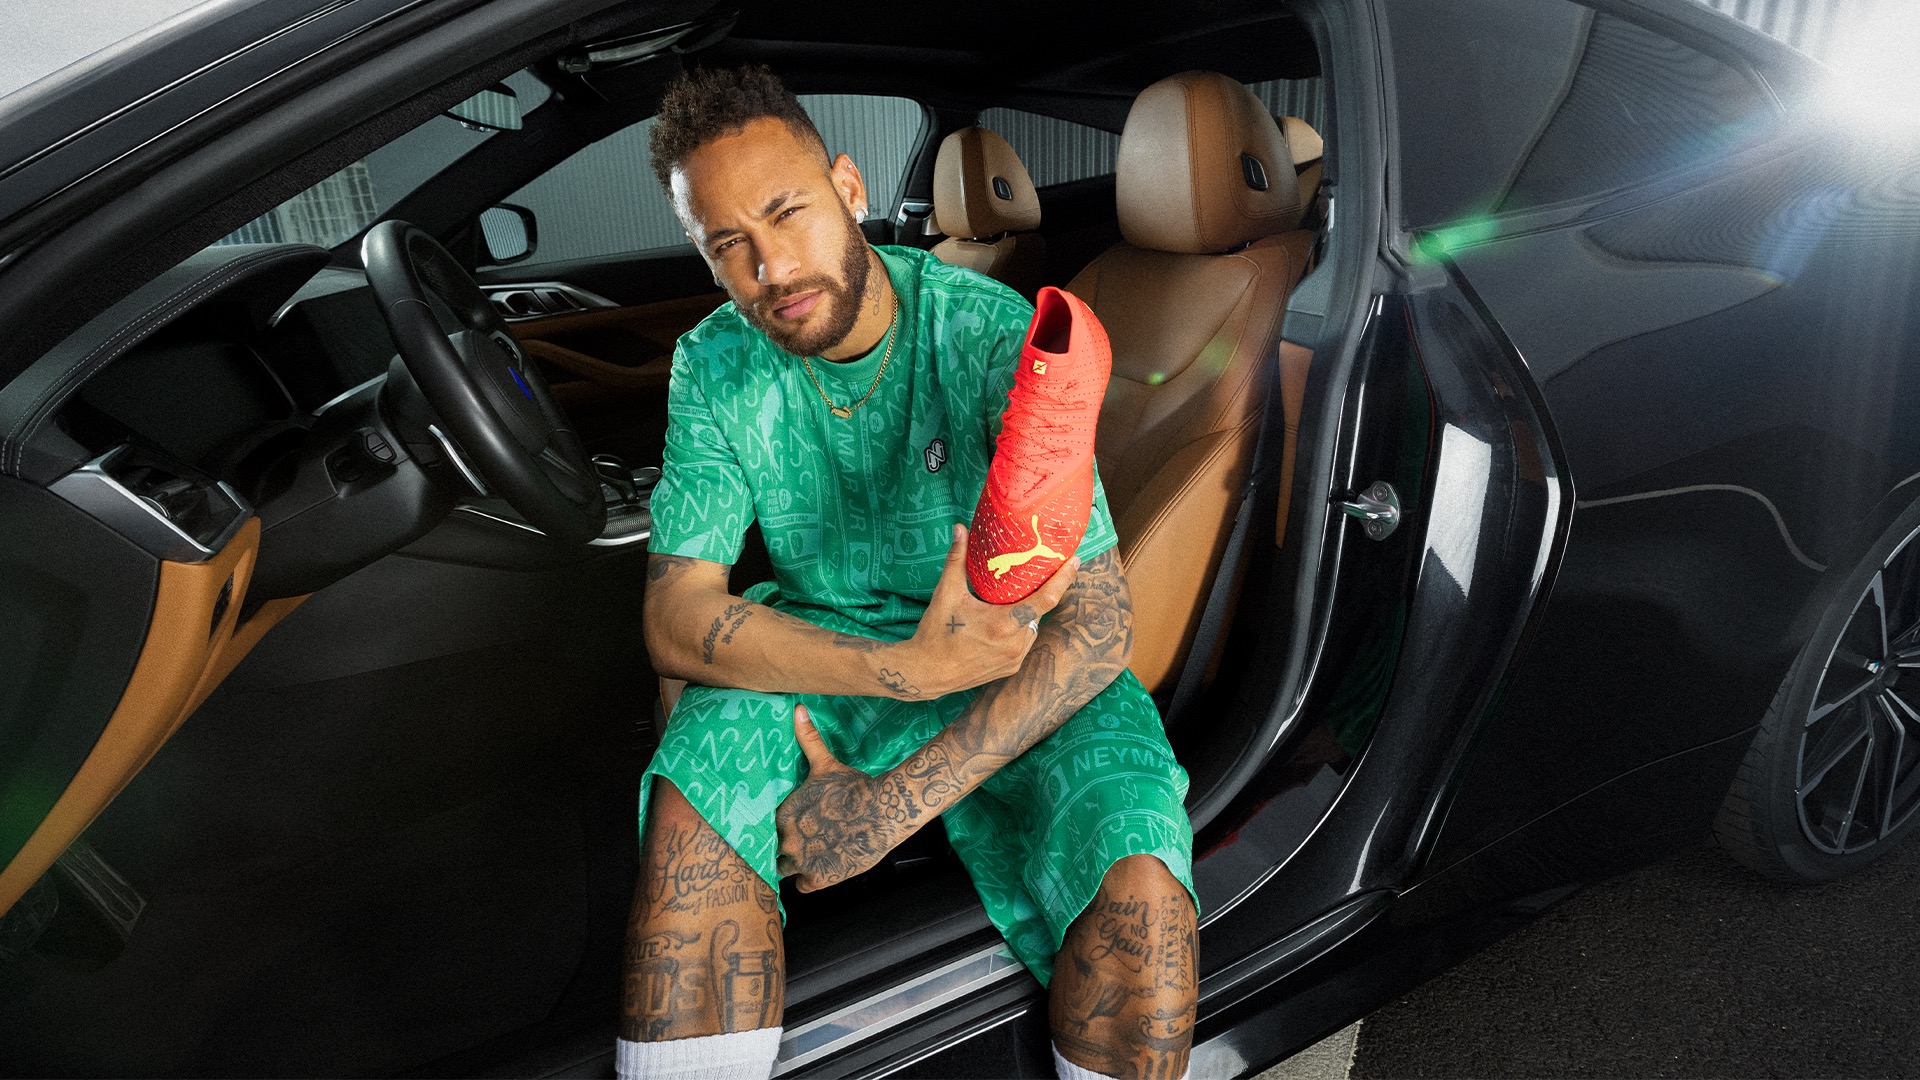 Qué botines usa Neymar? Marca, precio y color | Goal.com